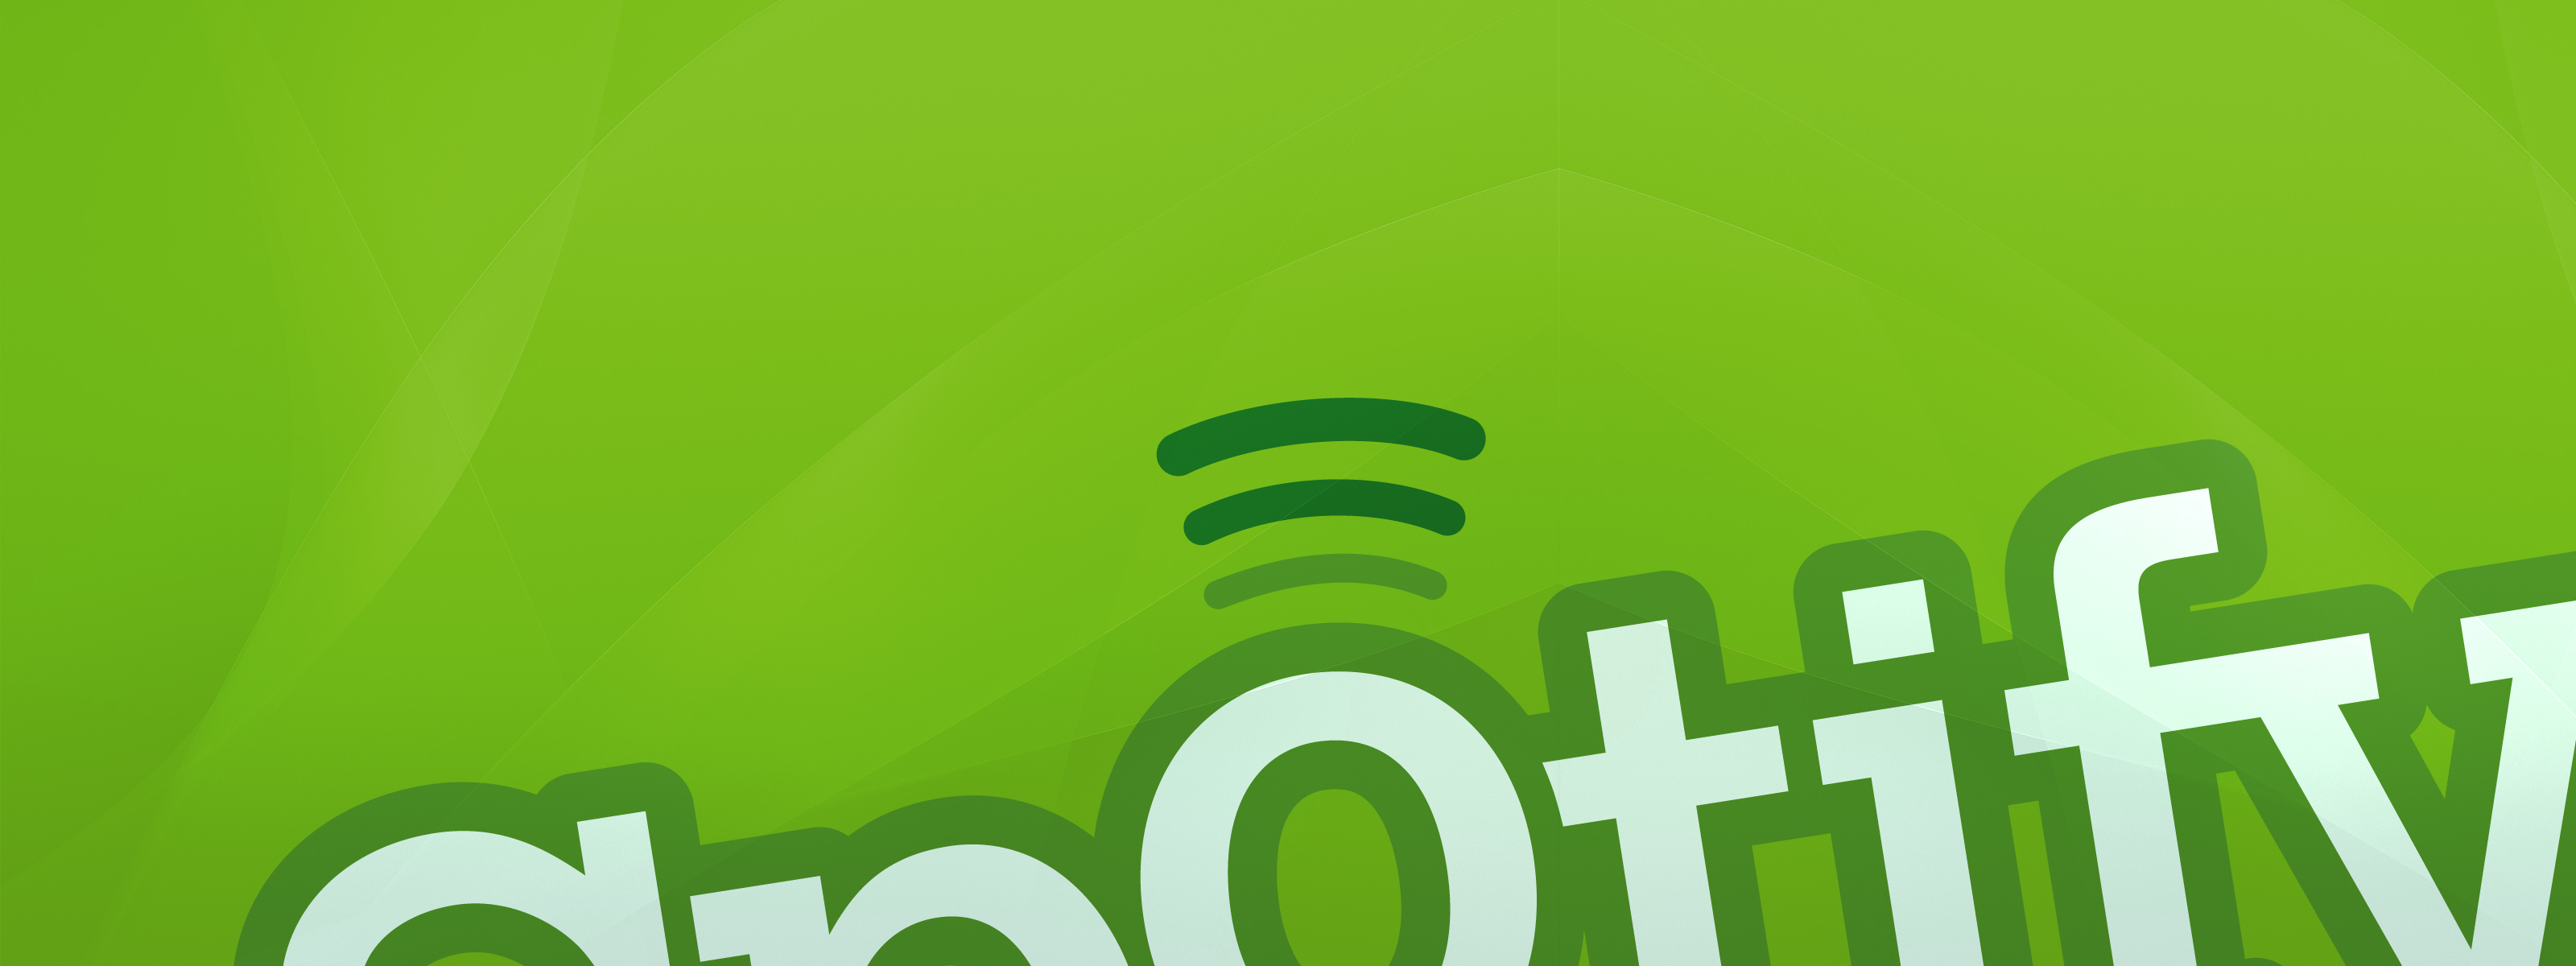 Come Spotify vuole migliorare l'esperienza utente gratuita in mobile